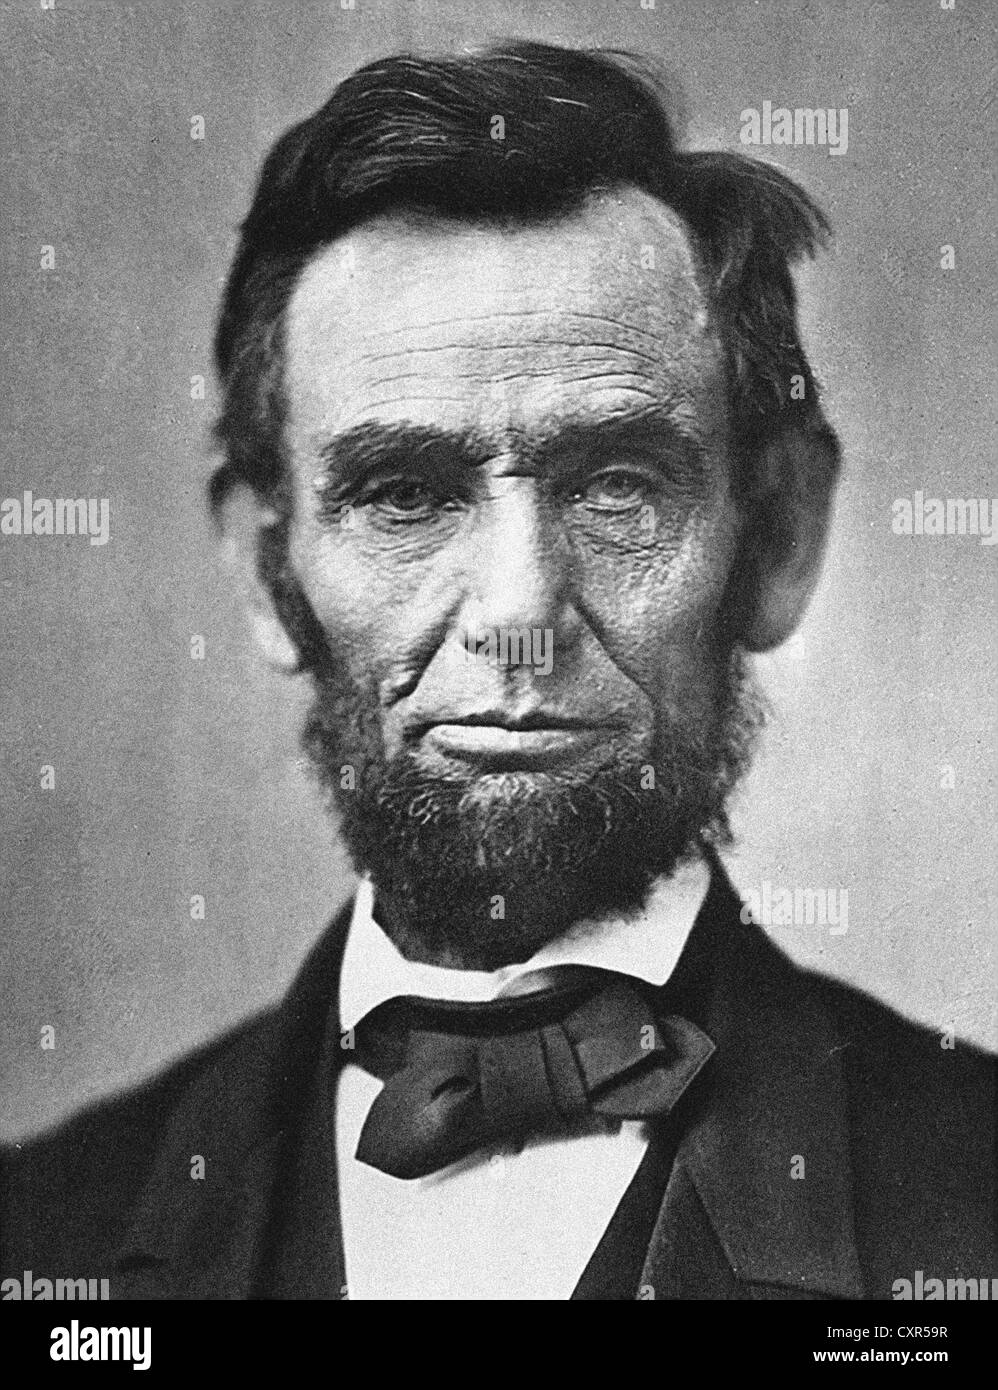 Abraham Lincoln sedicesimo presidente degli Stati Uniti Foto Stock